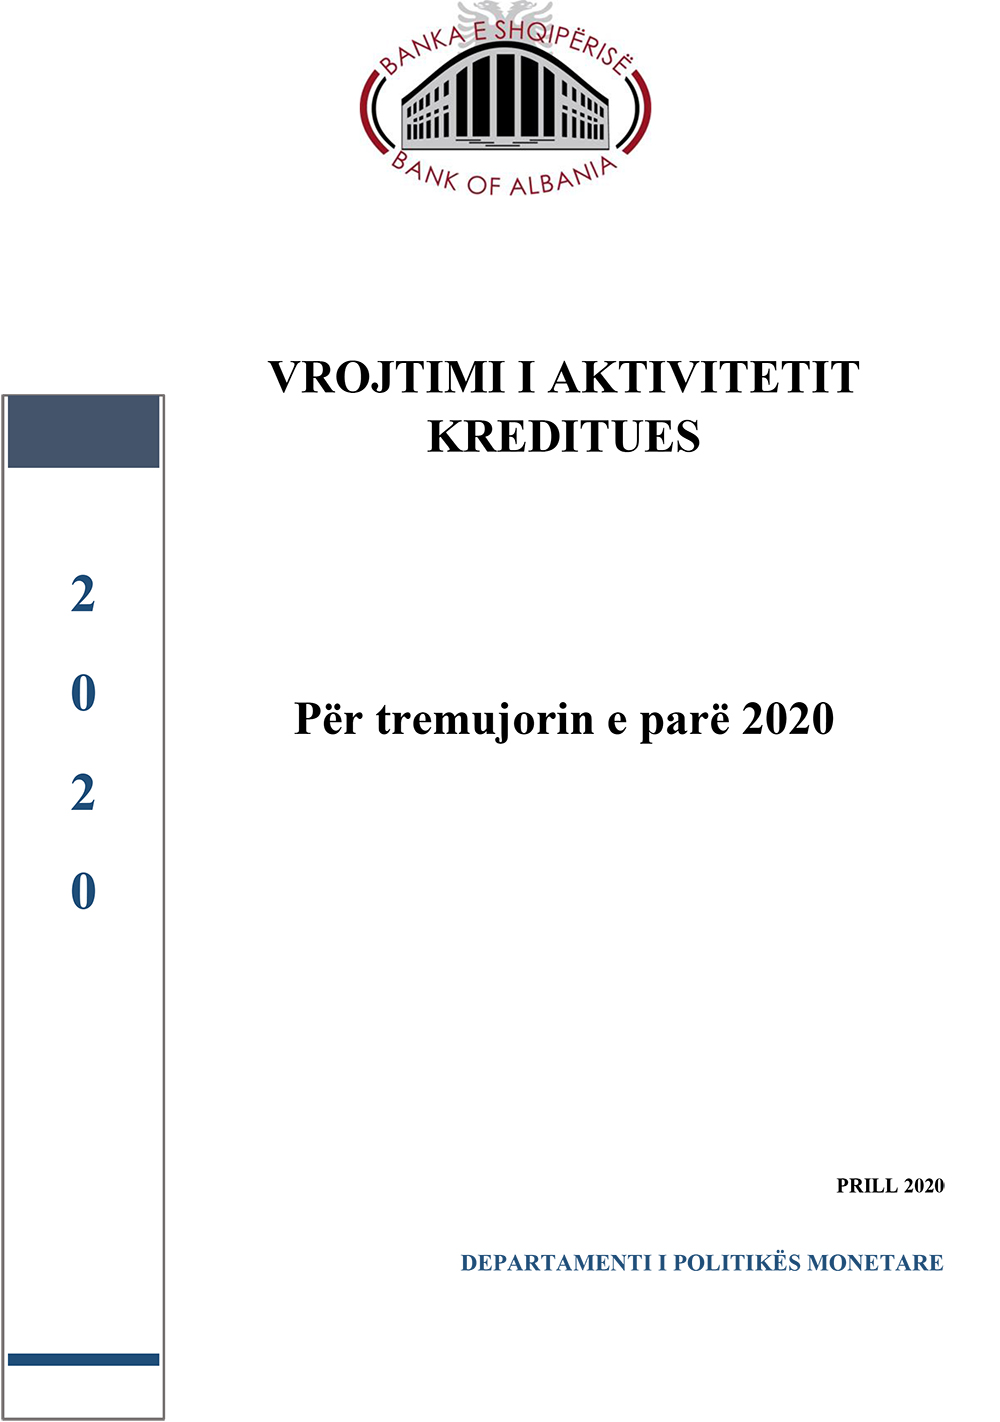 Vrojtimi për aktivitetin kreditues, T1 - 2020